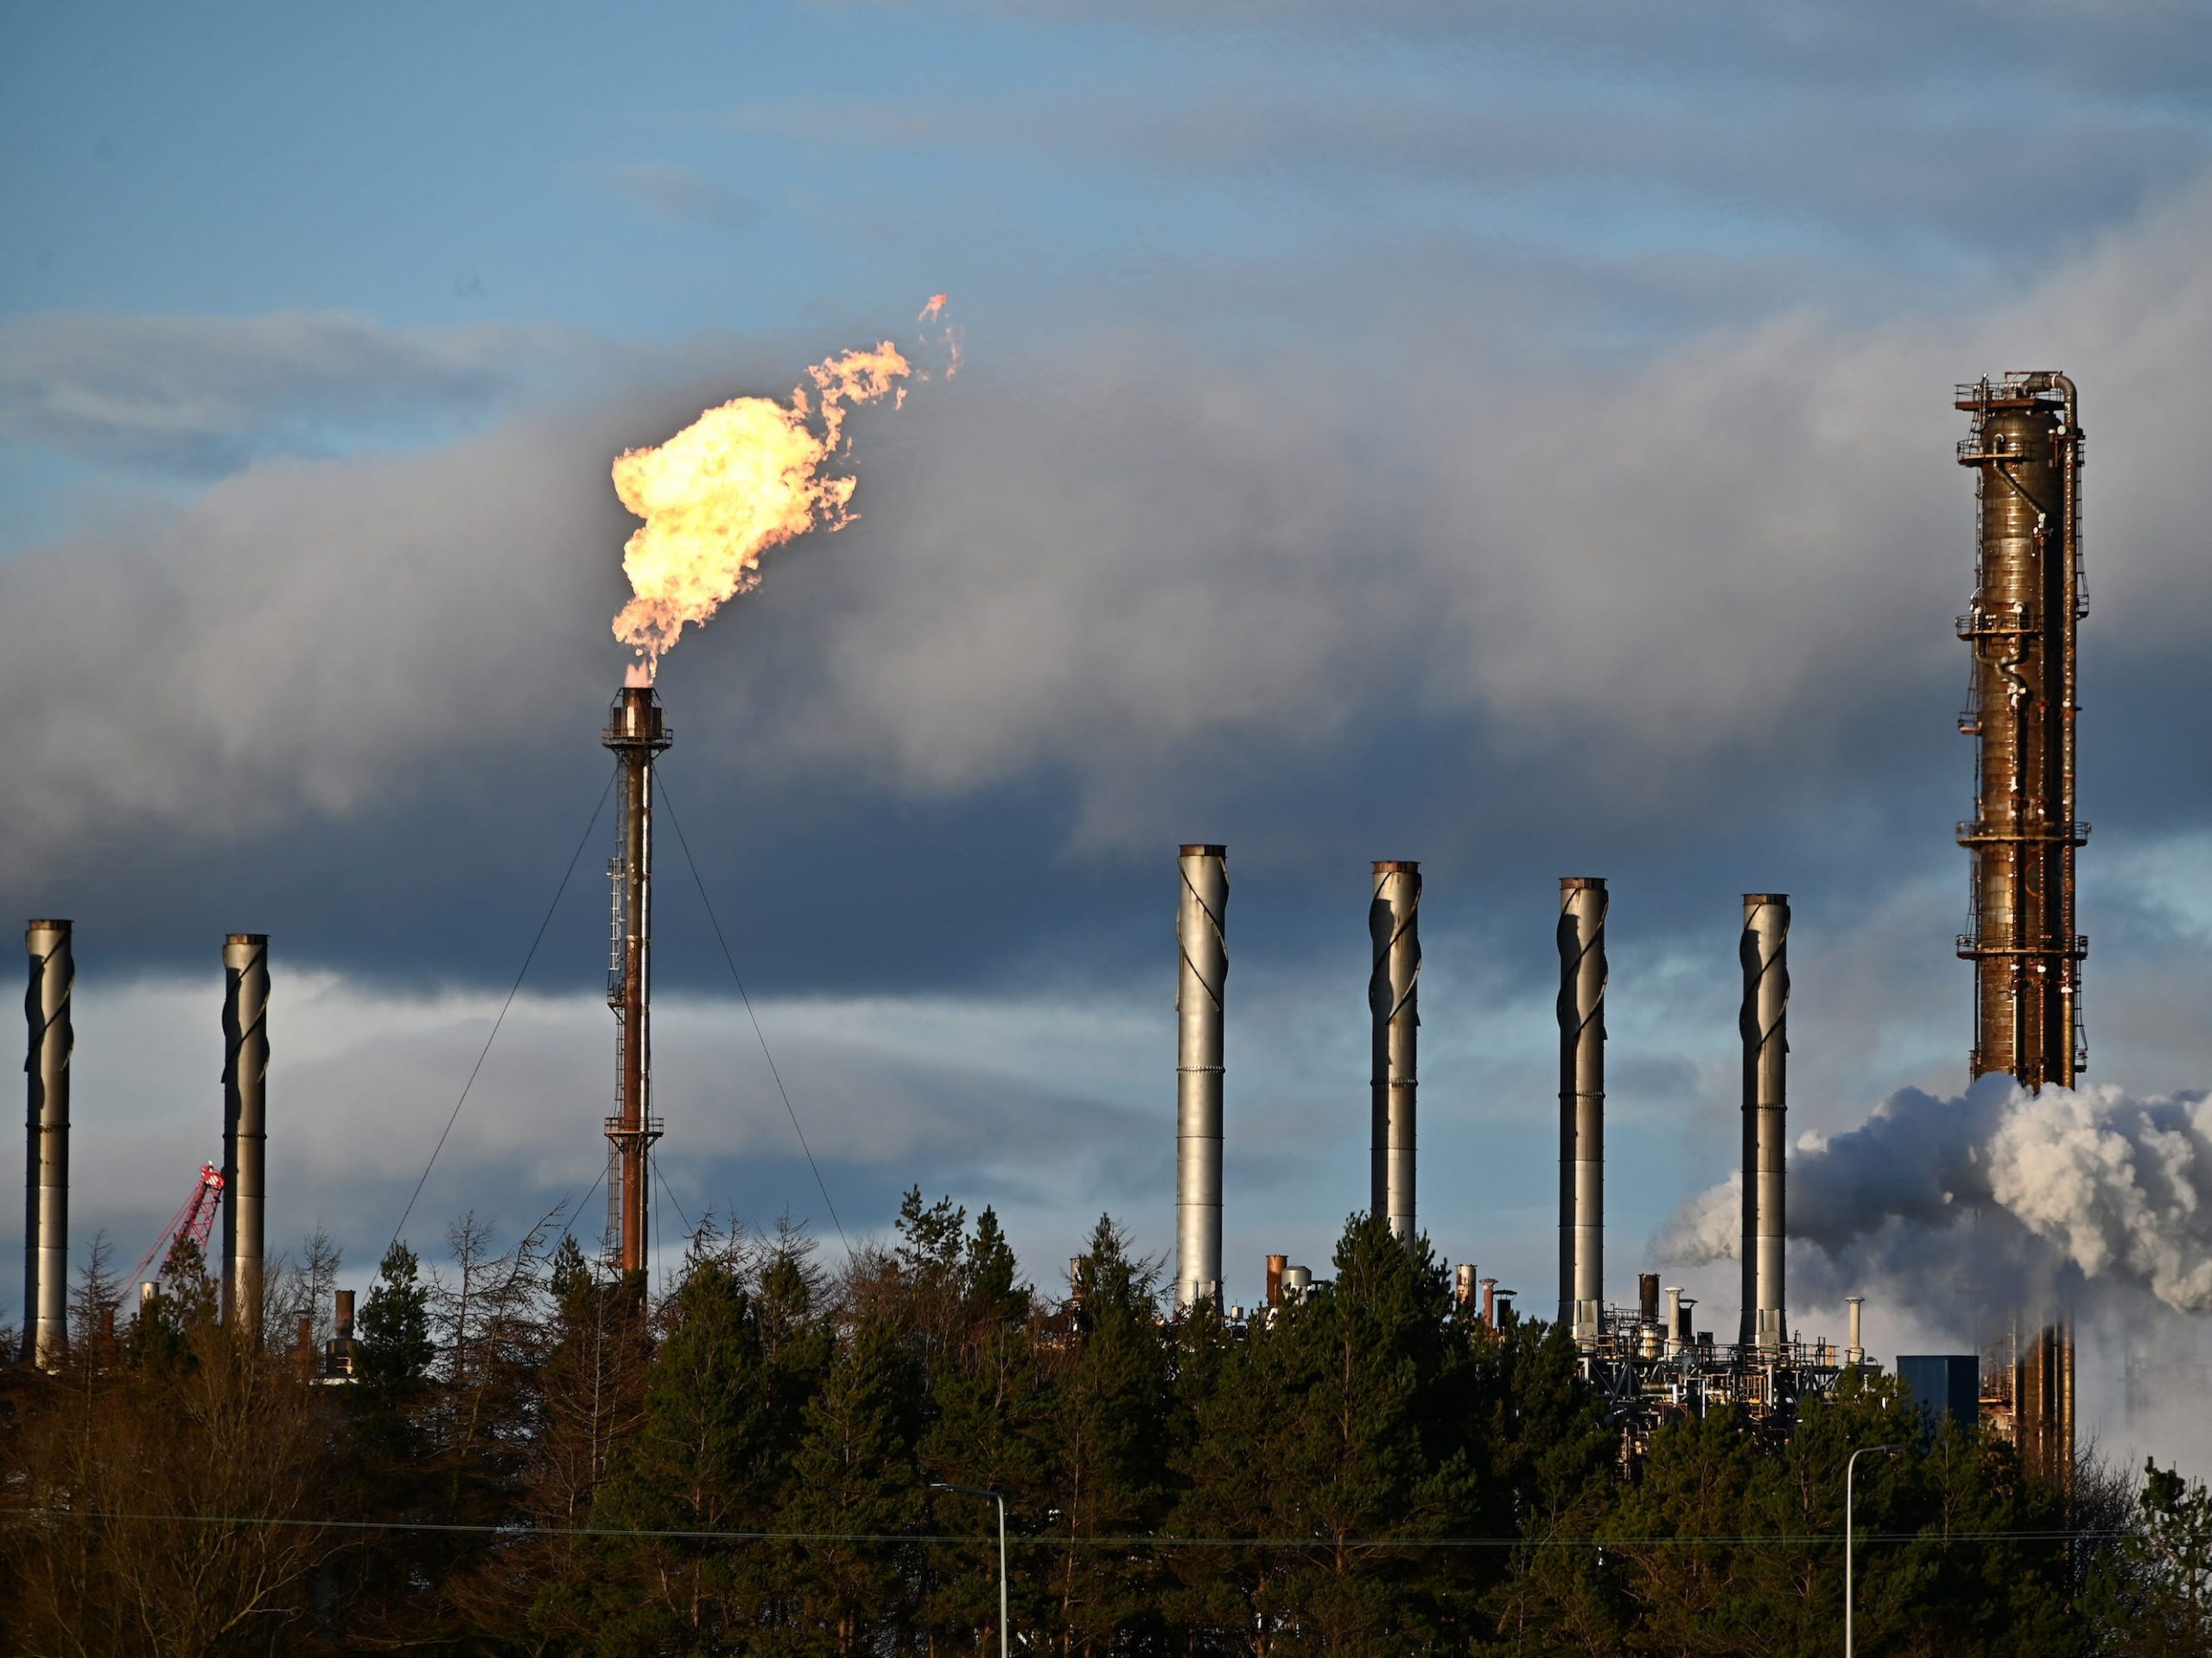 Exxon Mobil's Fife Ethylene Plant in Cowdenbeath, Scotland